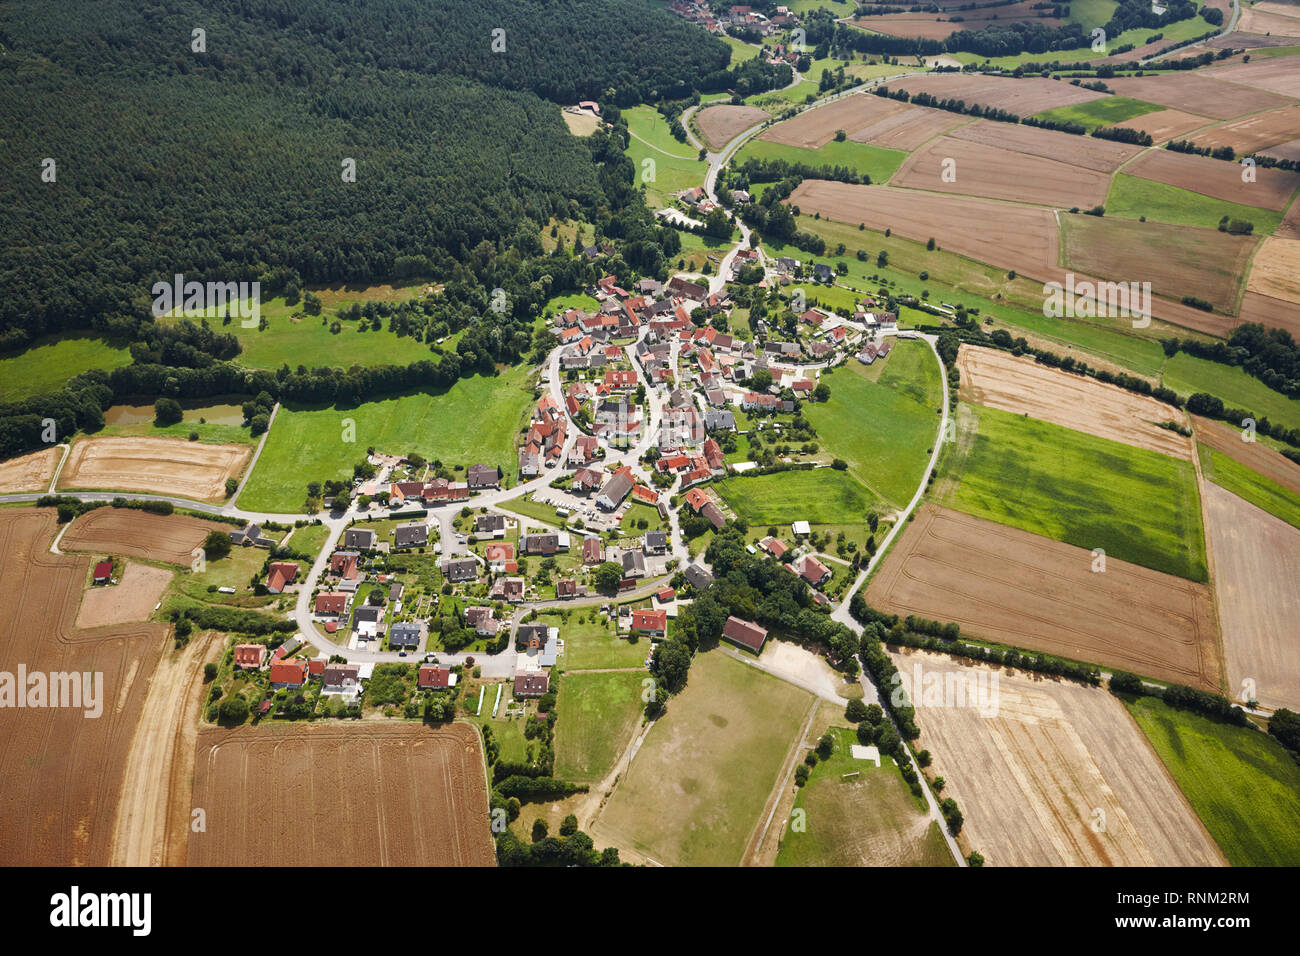 Die Stadt Fuernbach aus der Luft gesehen. Gemeinde Rauhenebrach - Landkreis Hassberg, Bayern, Deutschland Stockfoto